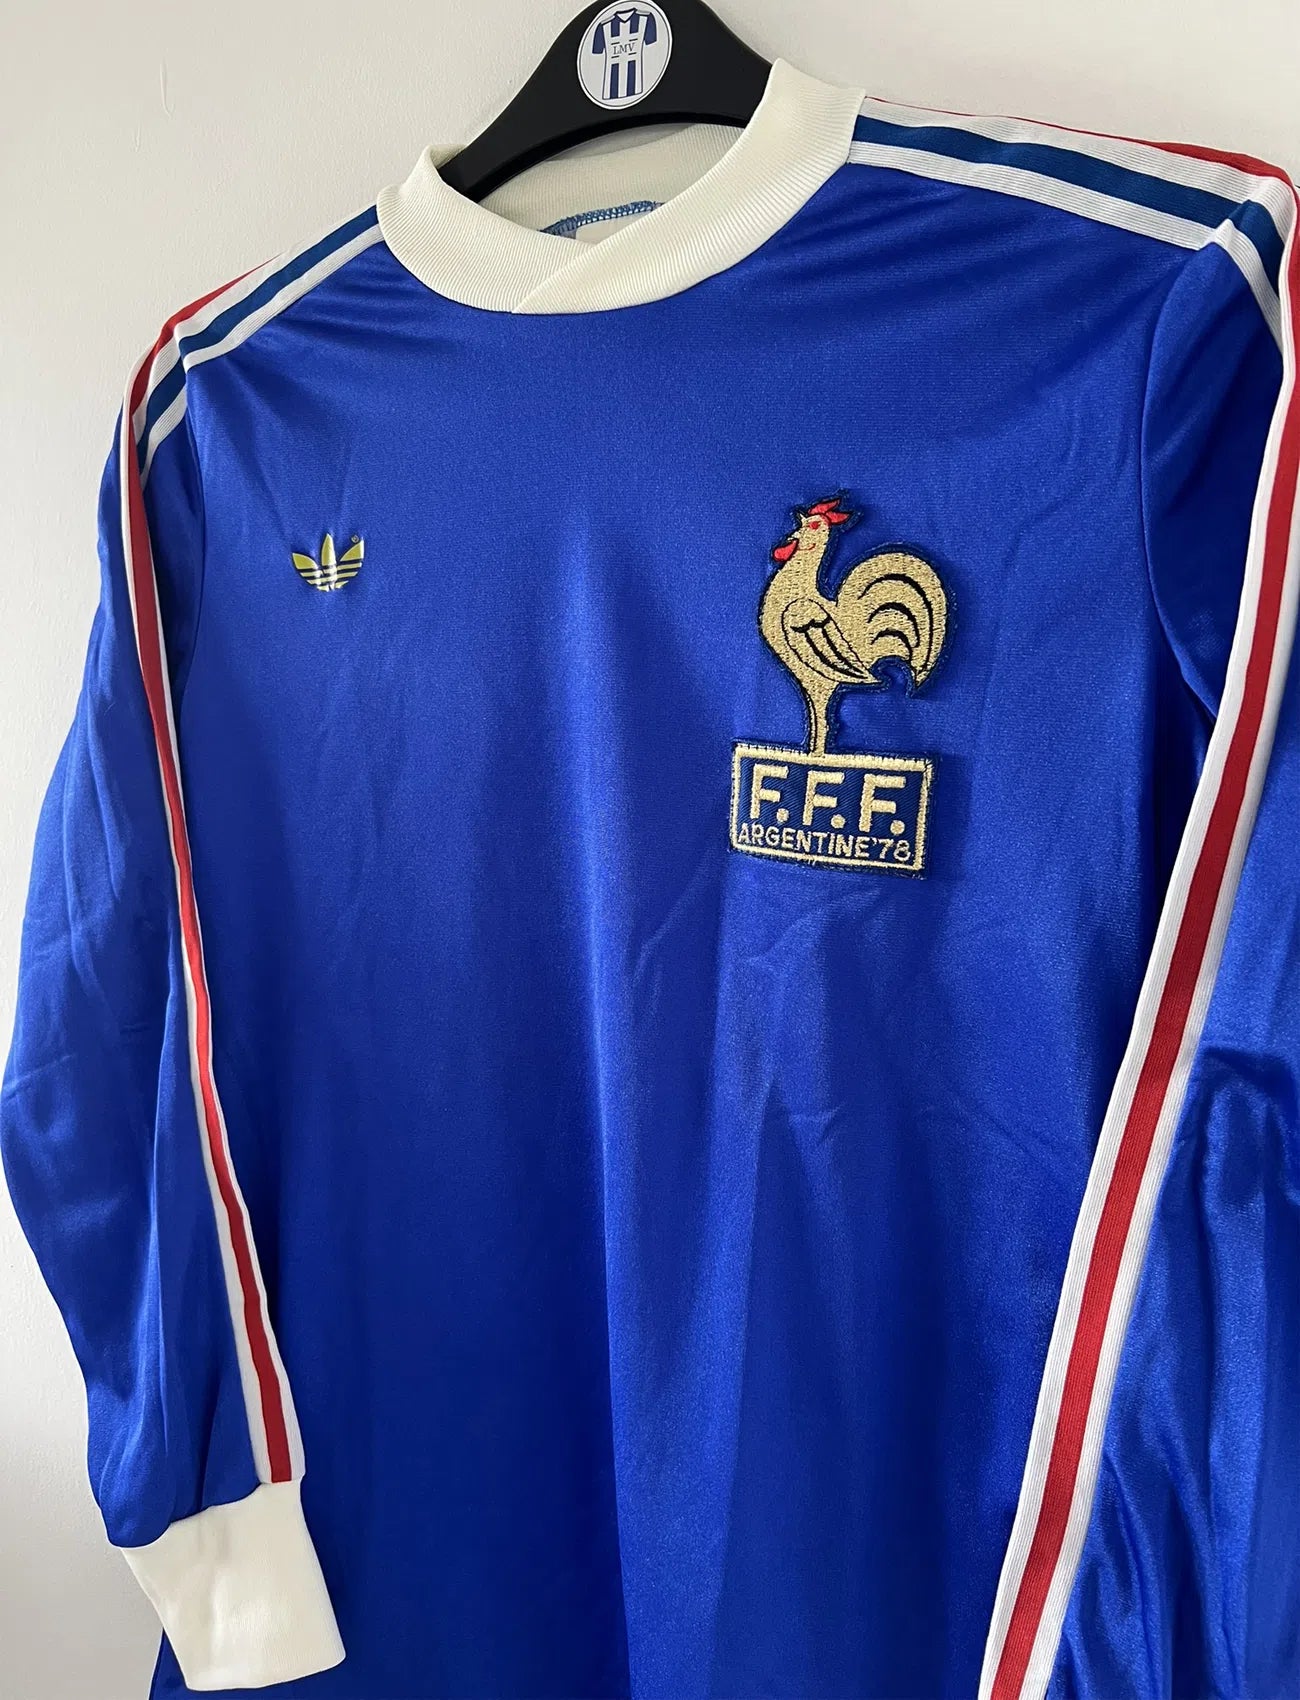 Maillot de foot vintage de l'équipe de france bleu blanc et rouge. Il s'agit du maillot domicile édité lors de la coupe du monde 1978. On peut retrouver l'équipementier adidas. Il s'agit d'un maillot authentique